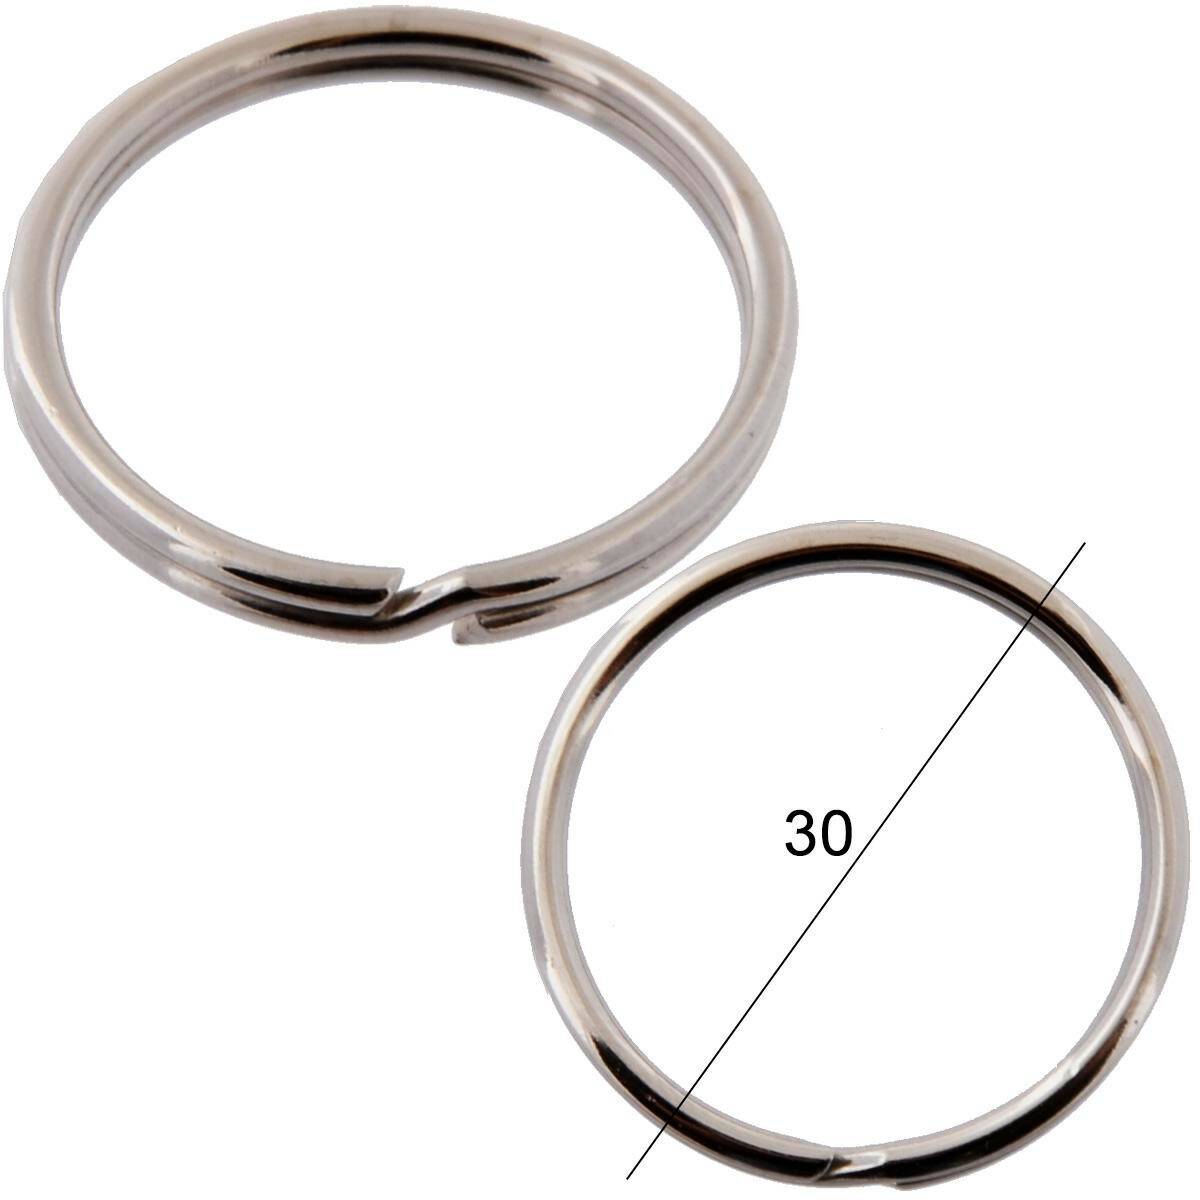 Key rings diameter 30mm